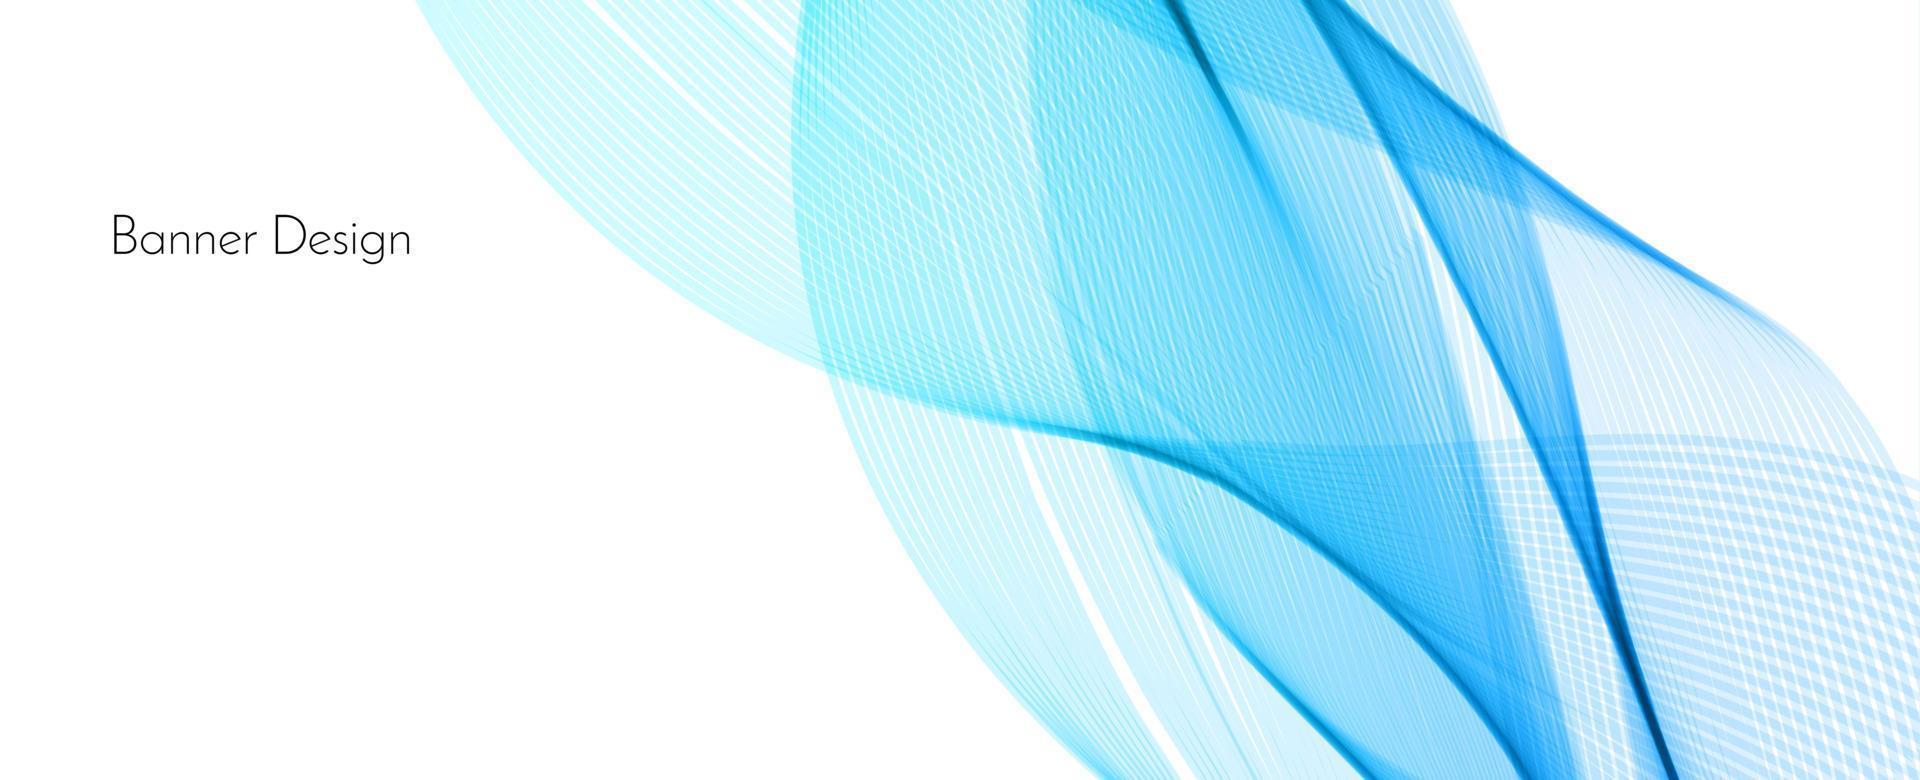 fundo de banner abstrato azul moderno onda vetor